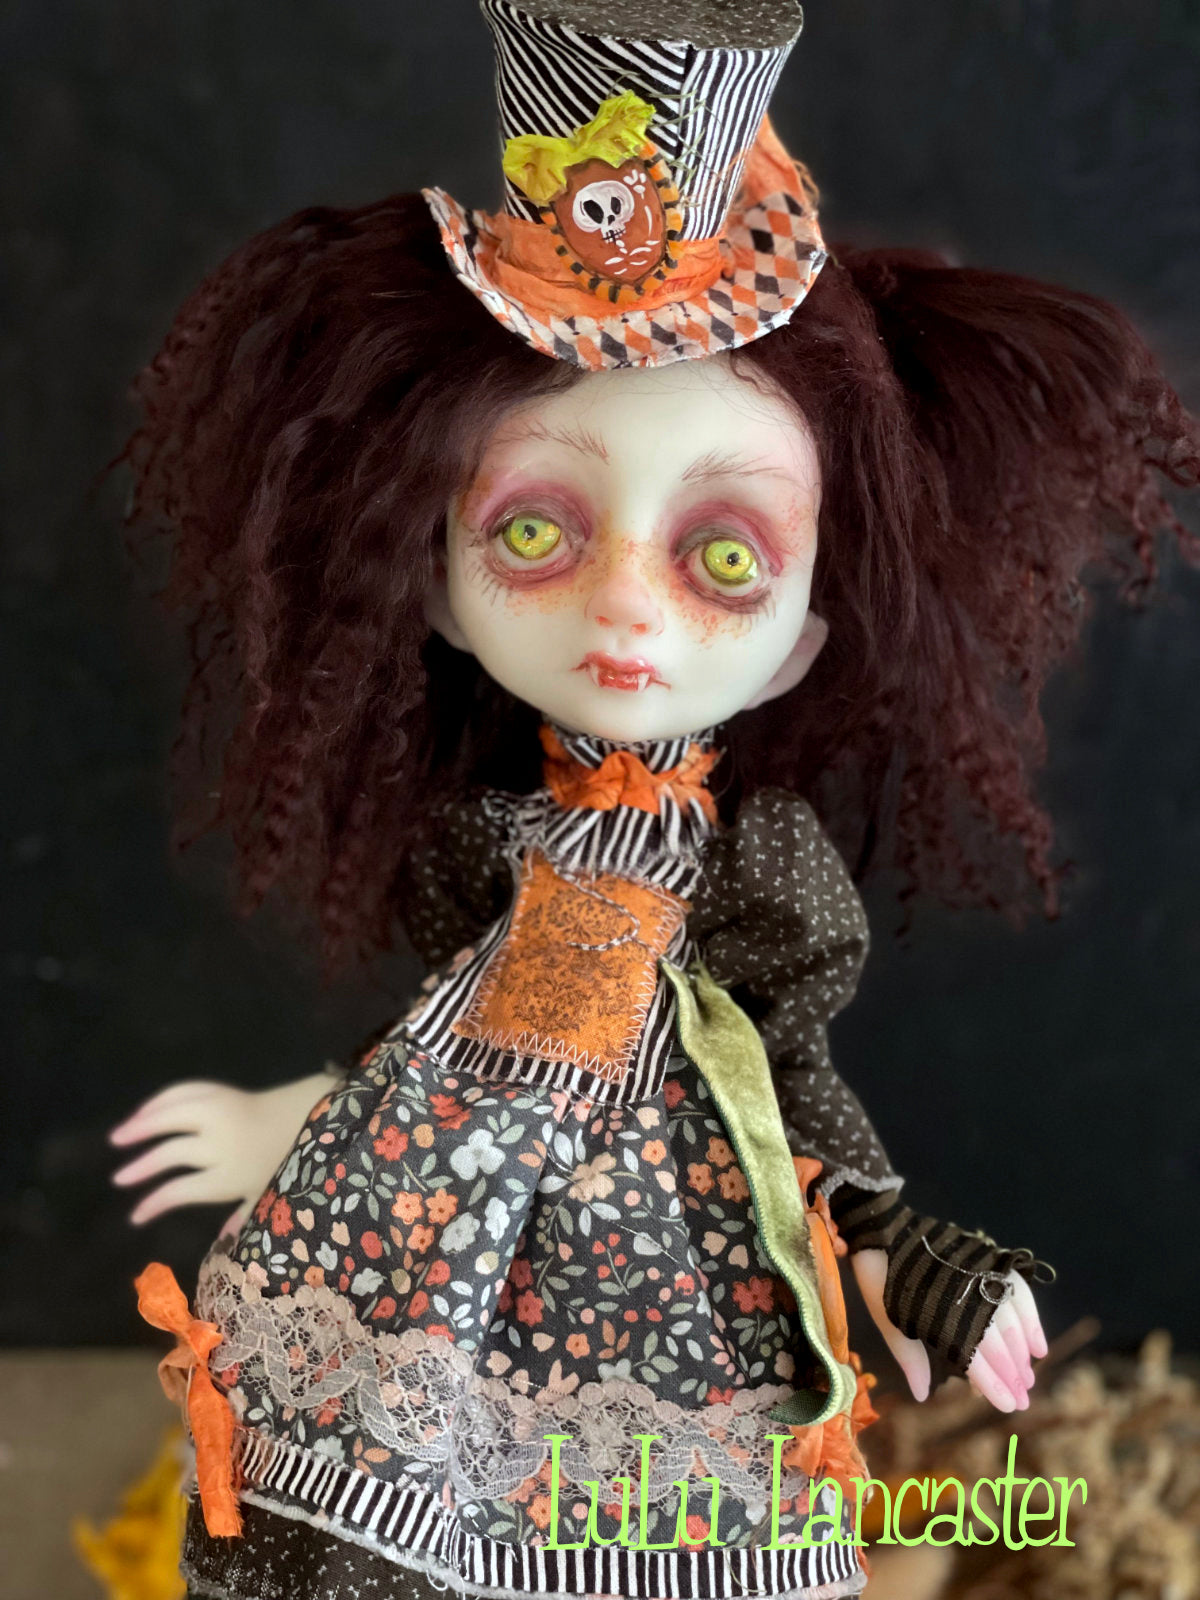 Daciana Pumpkin patch Vampire Original LuLu Lancaster Halloween Art Dolls